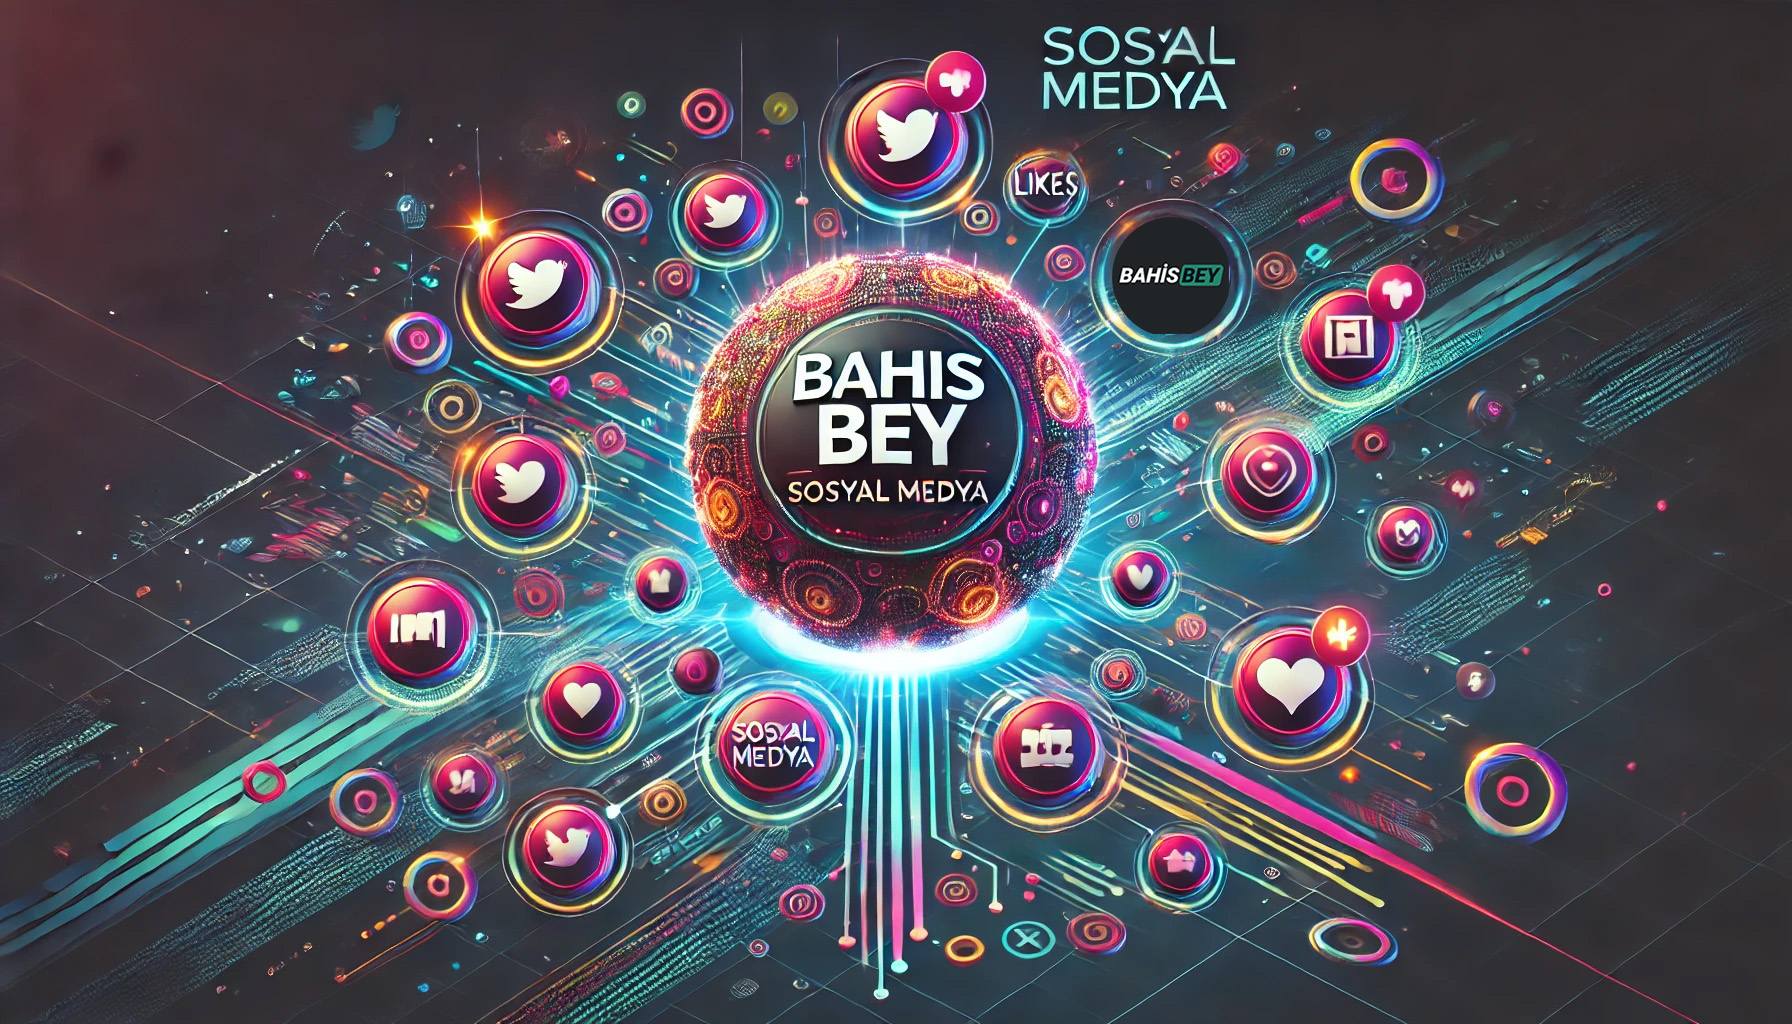 Bahisbey'in Sosyal Medyada Başarısının Sırrı Nedir?